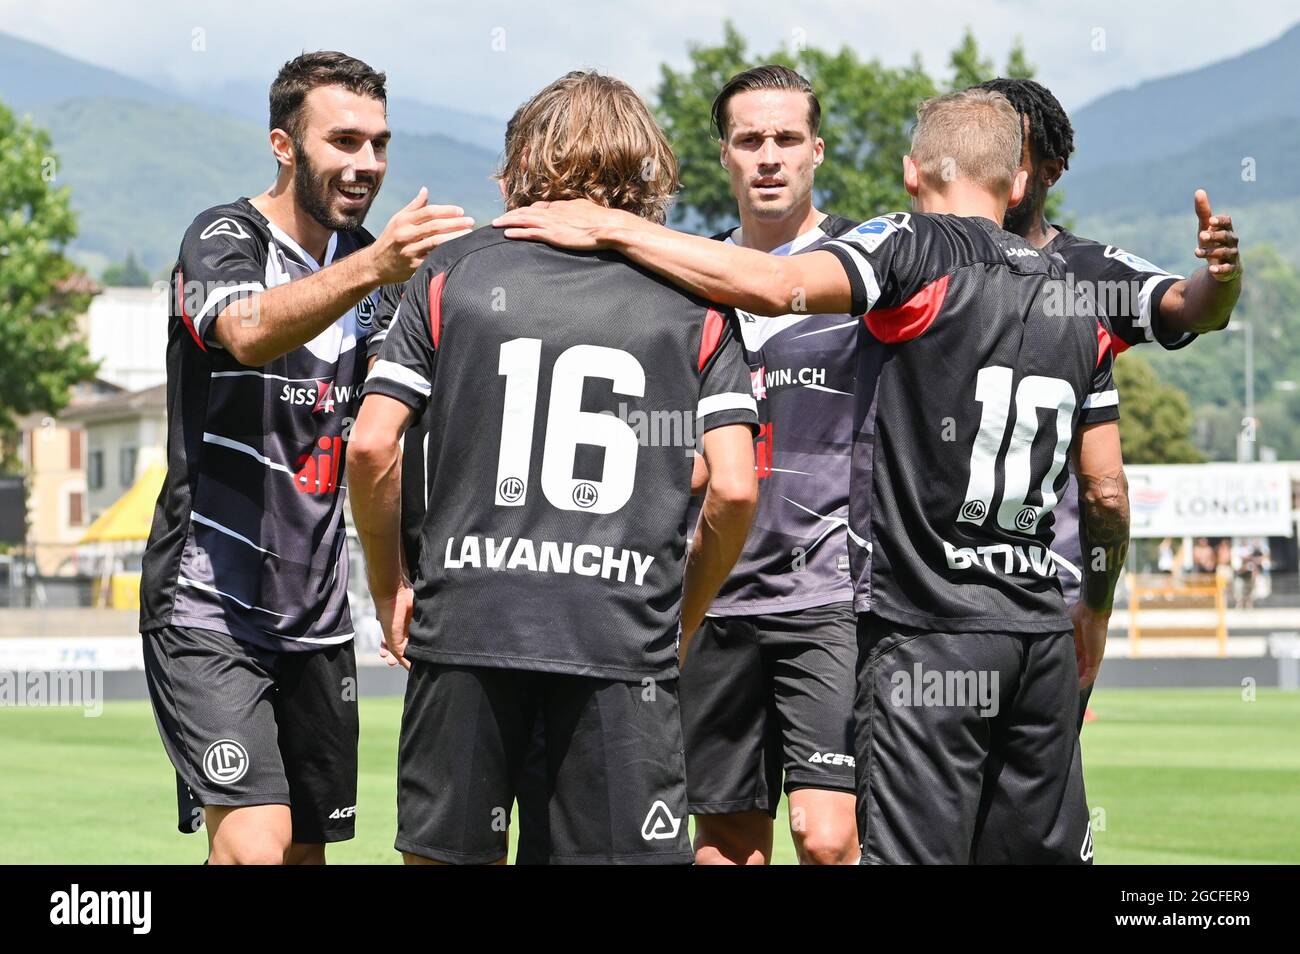 Club: FC Lugano